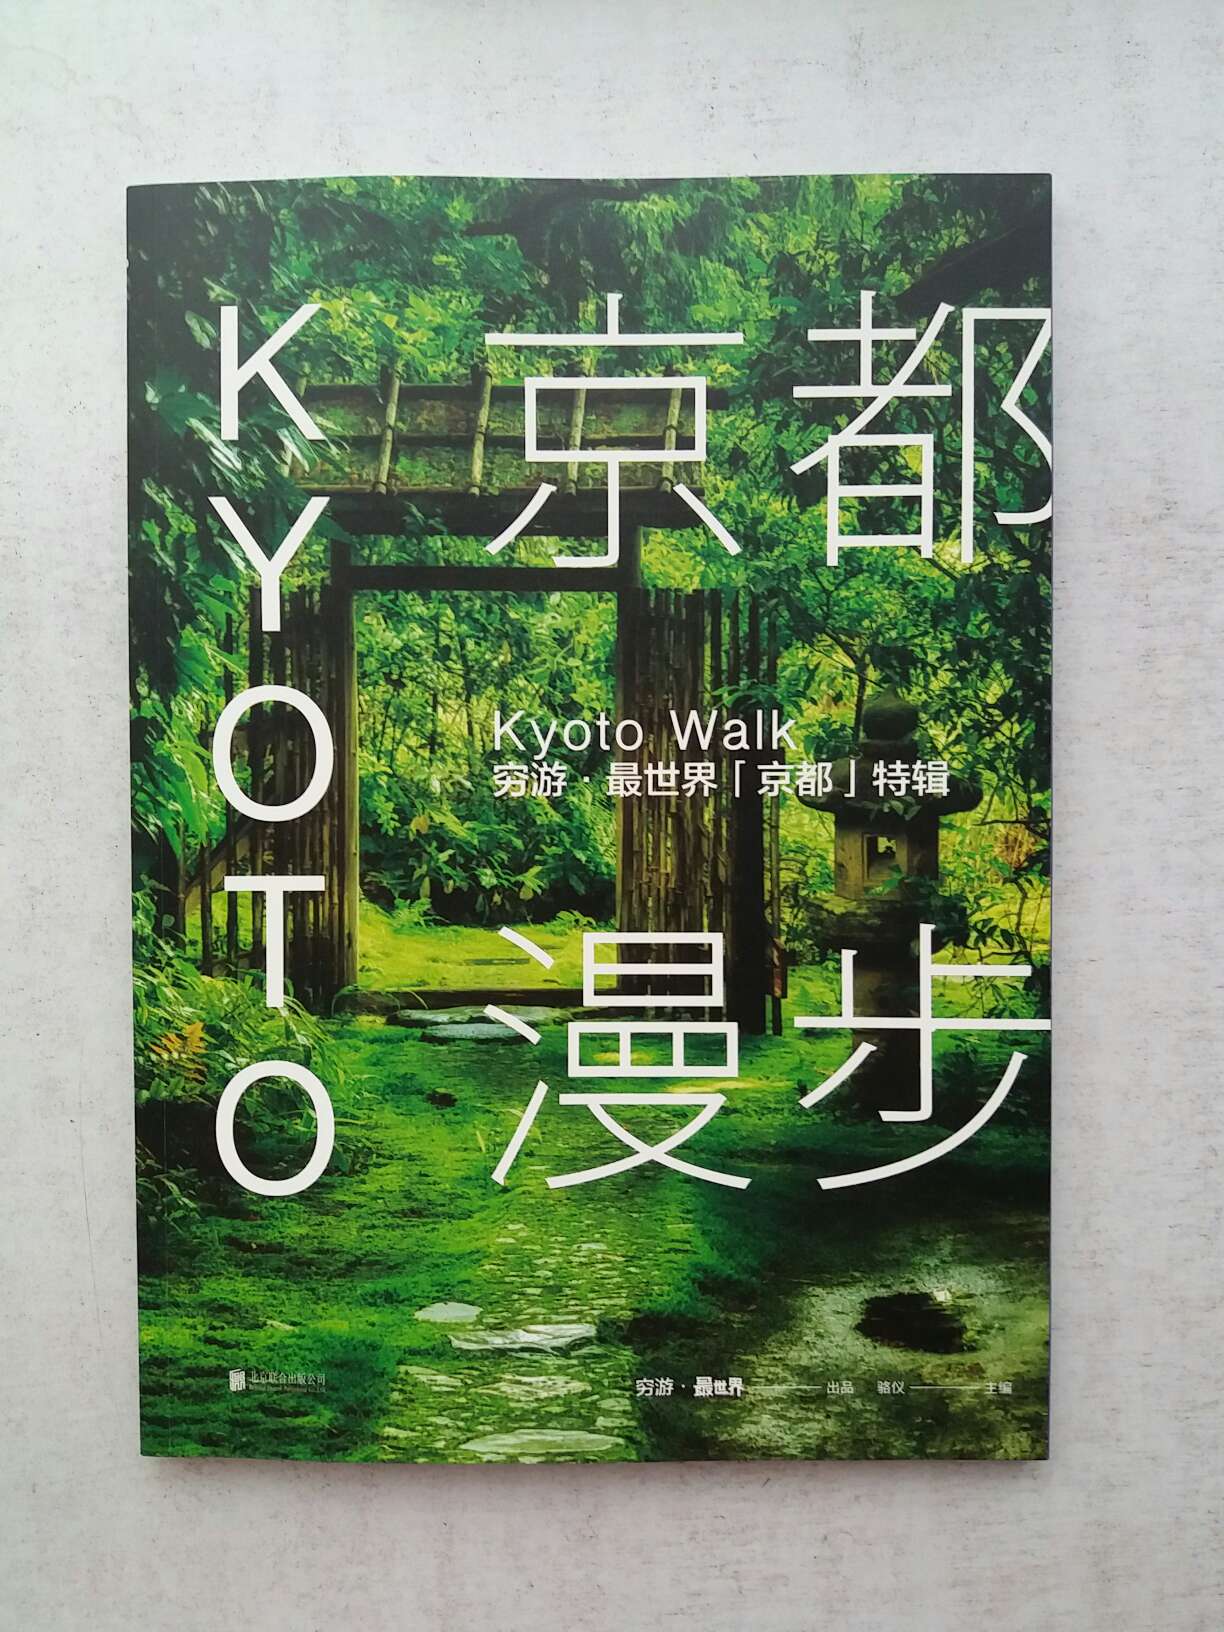 这是一本杂志书，印刷精美，对京都有总体介绍，不要把它当作旅游攻略看。